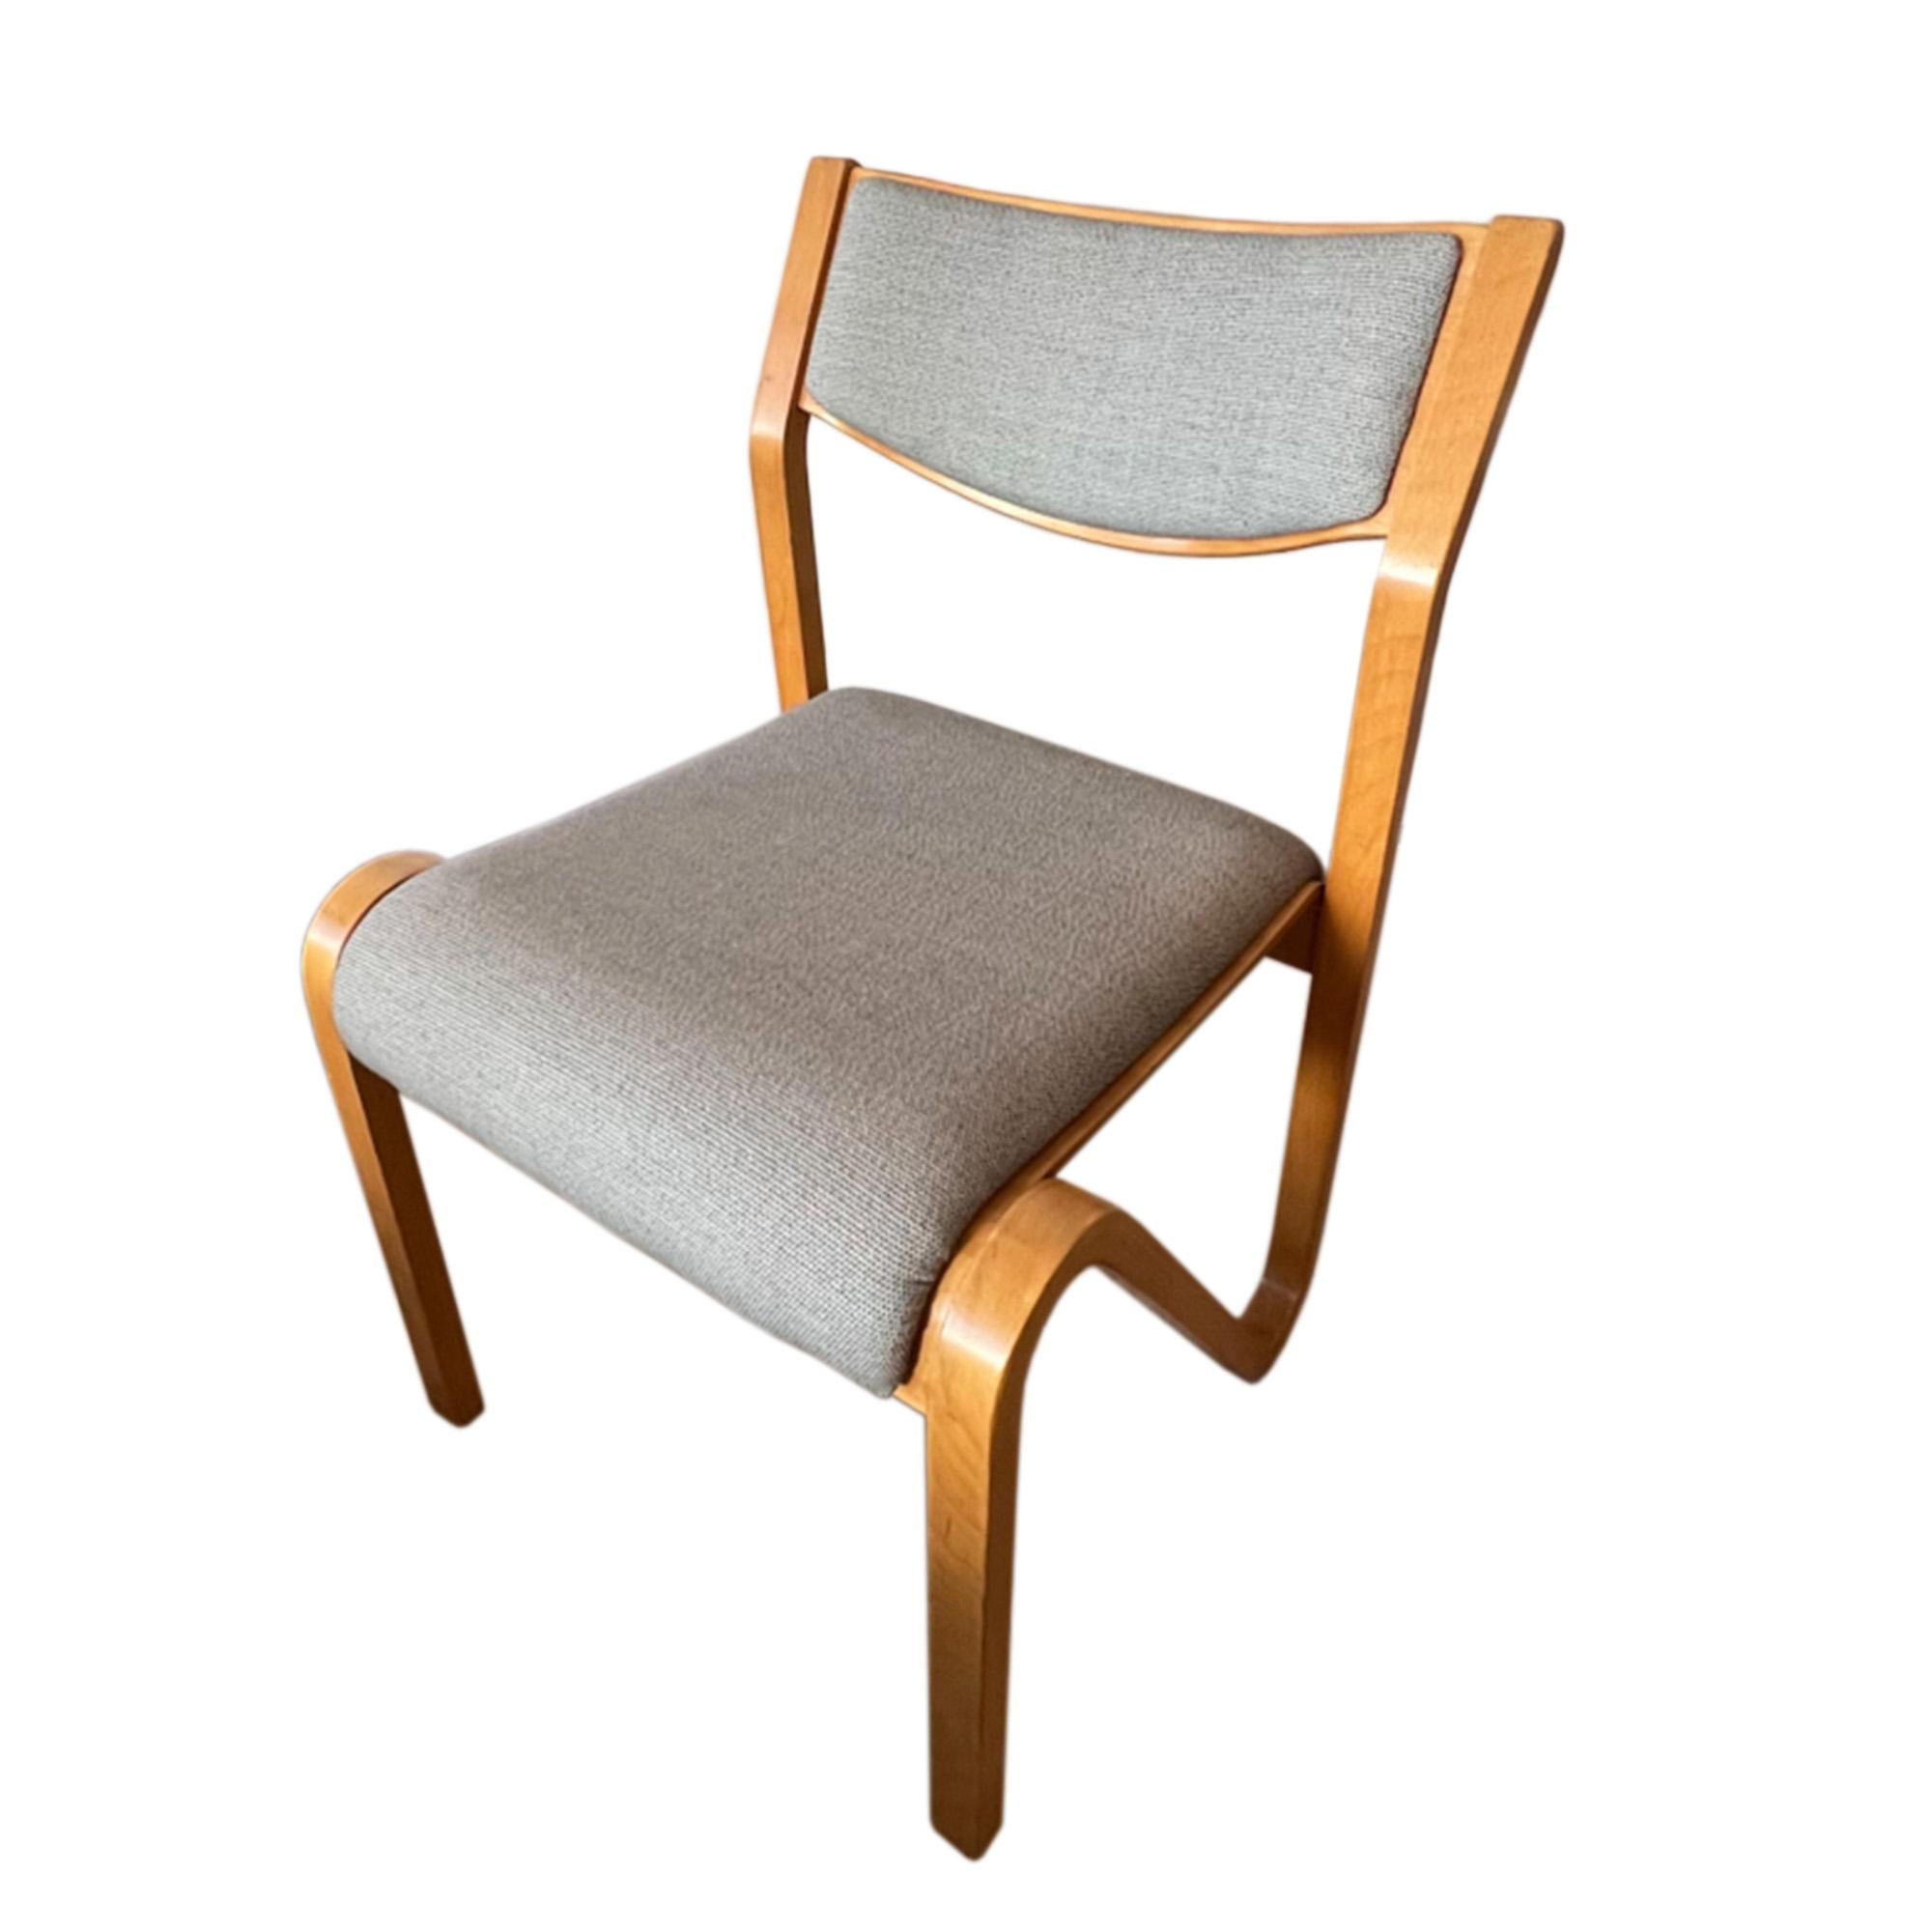 Un ensemble de élégants fauteuils français, fabriqués dans les années 1960, à la manière d'Alvar Alto. Design attrayant et pratique du milieu du siècle dernier. 

Nous les avons fait retapisser à l'aide de tissu Bute. 

Les tissus de bute ont